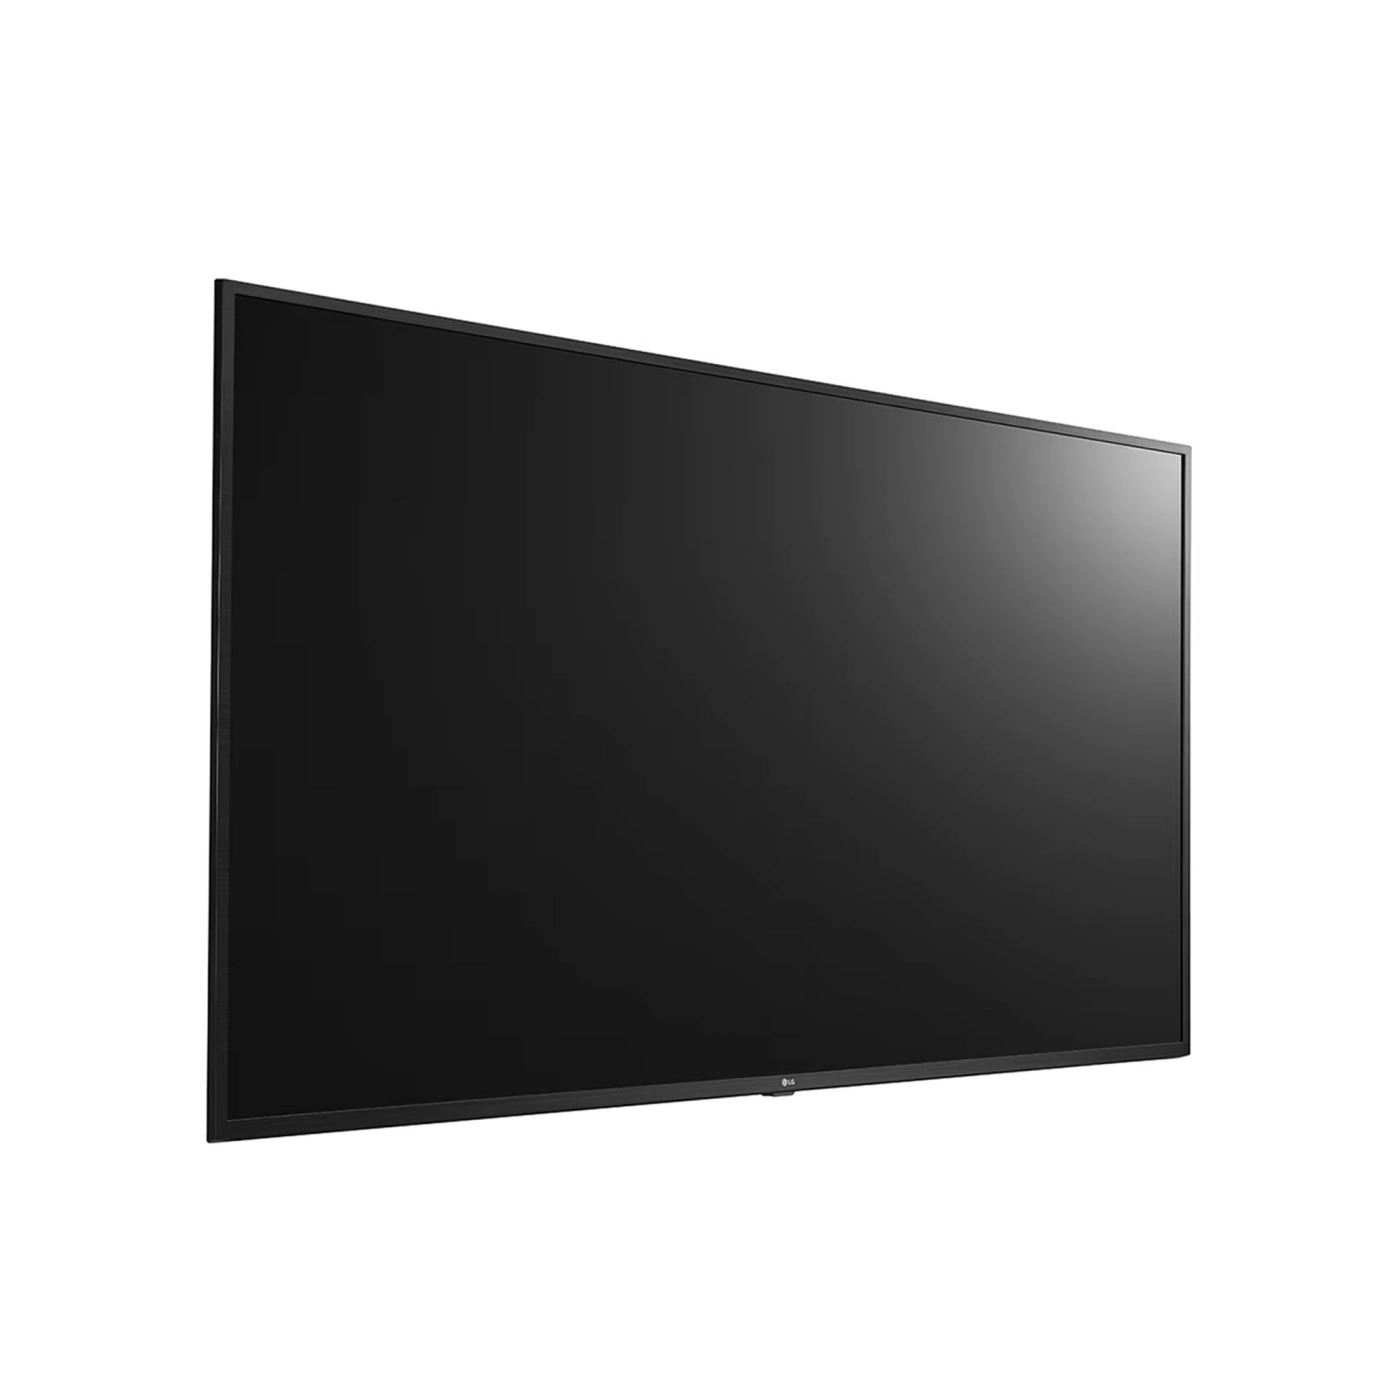 Купить LCD панель LG 65UT640S0ZA - фото 8